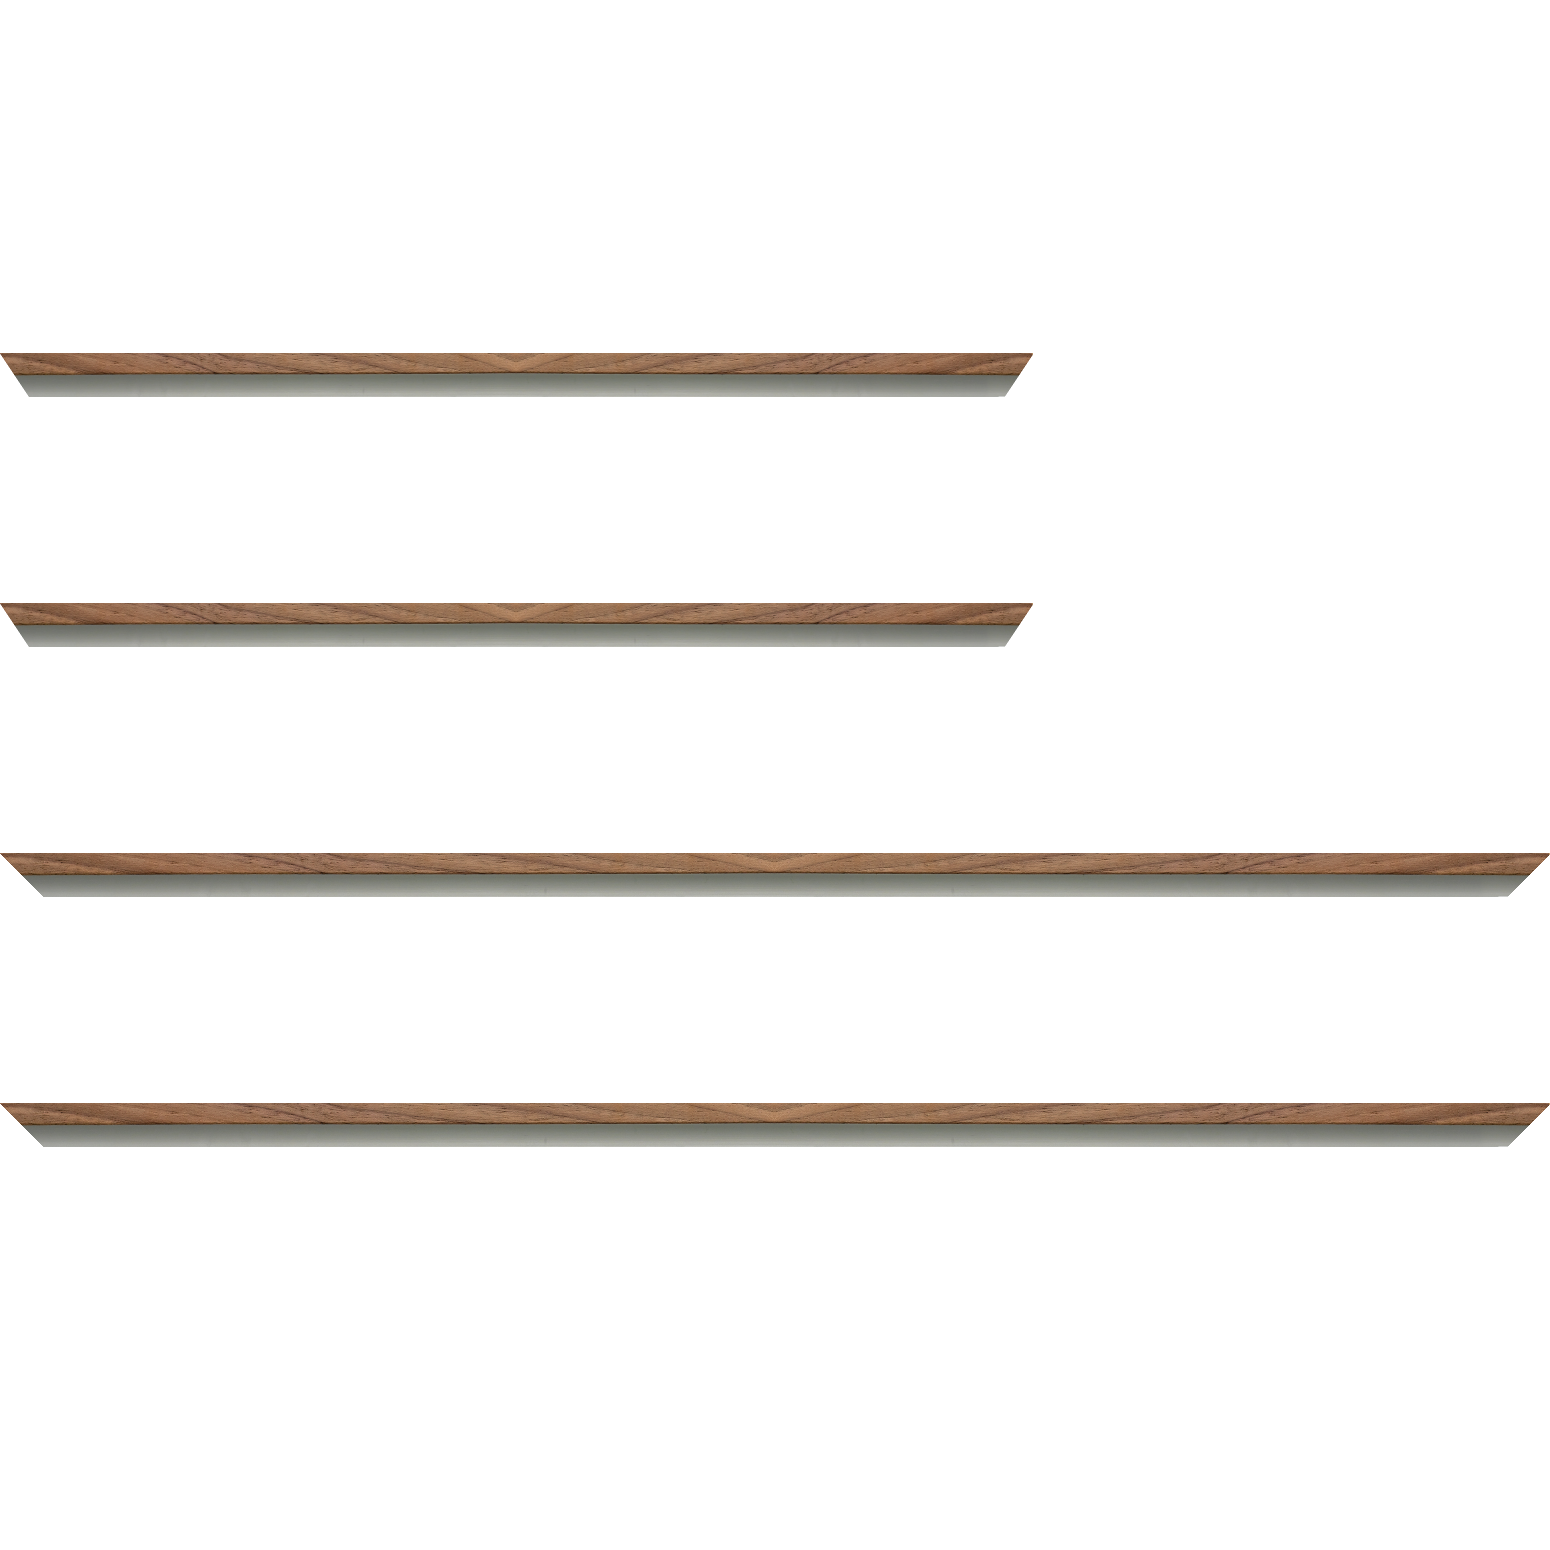 Baguette aluminium profil plat largeur 8mm, placage véritable noyer ,(le sujet qui sera glissé dans le cadre sera en retrait de 6mm de la face du cadre assurant un effet très contemporain) mise en place du sujet rapide et simple: assemblage du cadre par double équerre à vis (livré avec le système d'accrochage qui se glisse dans le profilé) encadrement non assemblé,  livré avec son sachet d'accessoires - 40x60